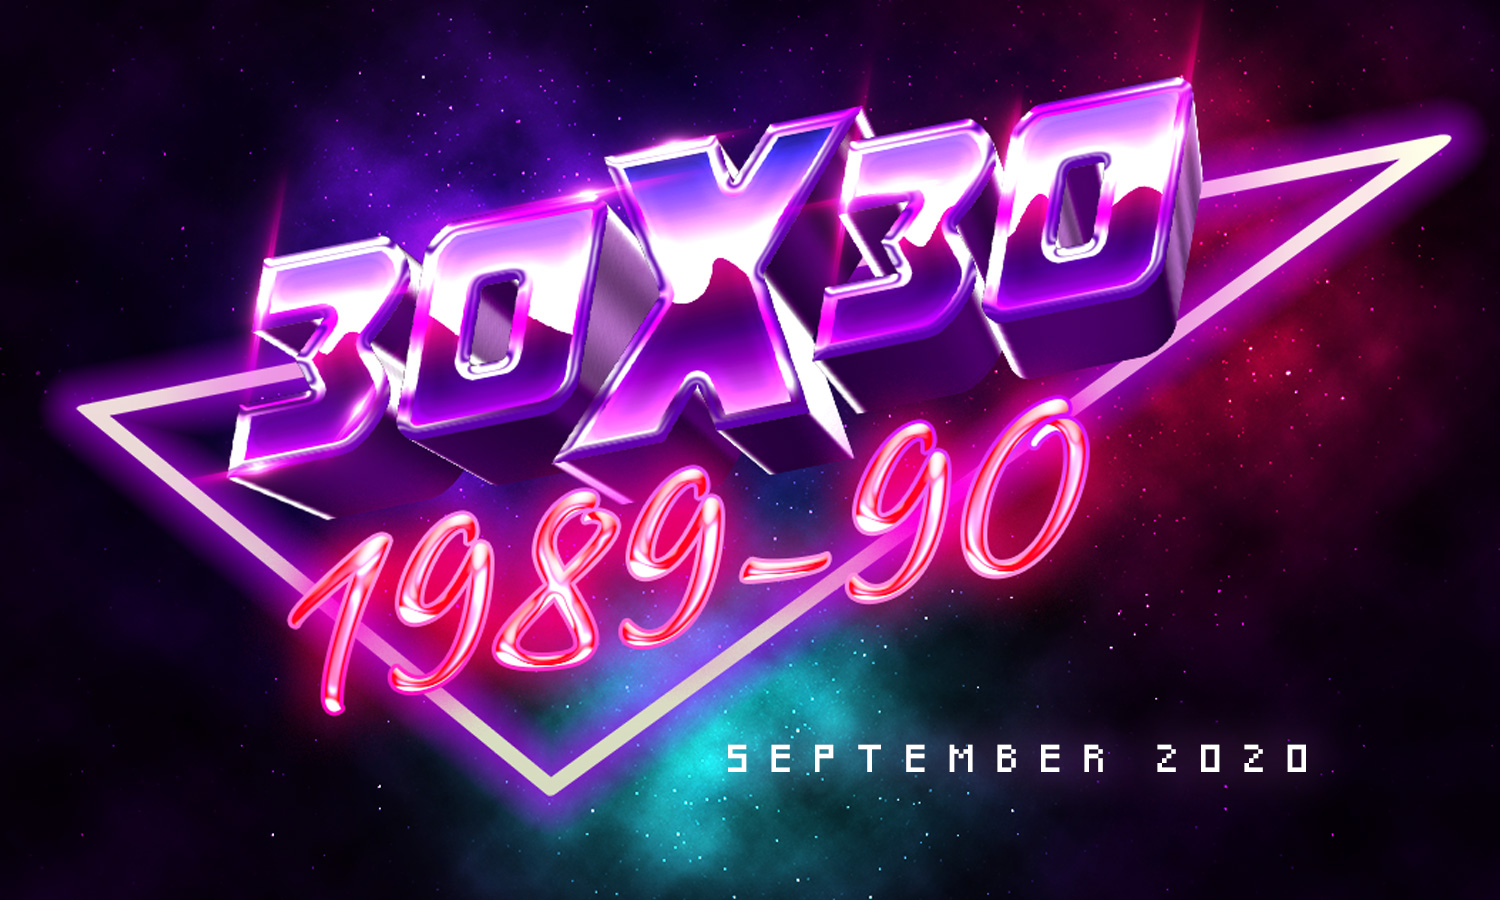 30x30: 1989-1990